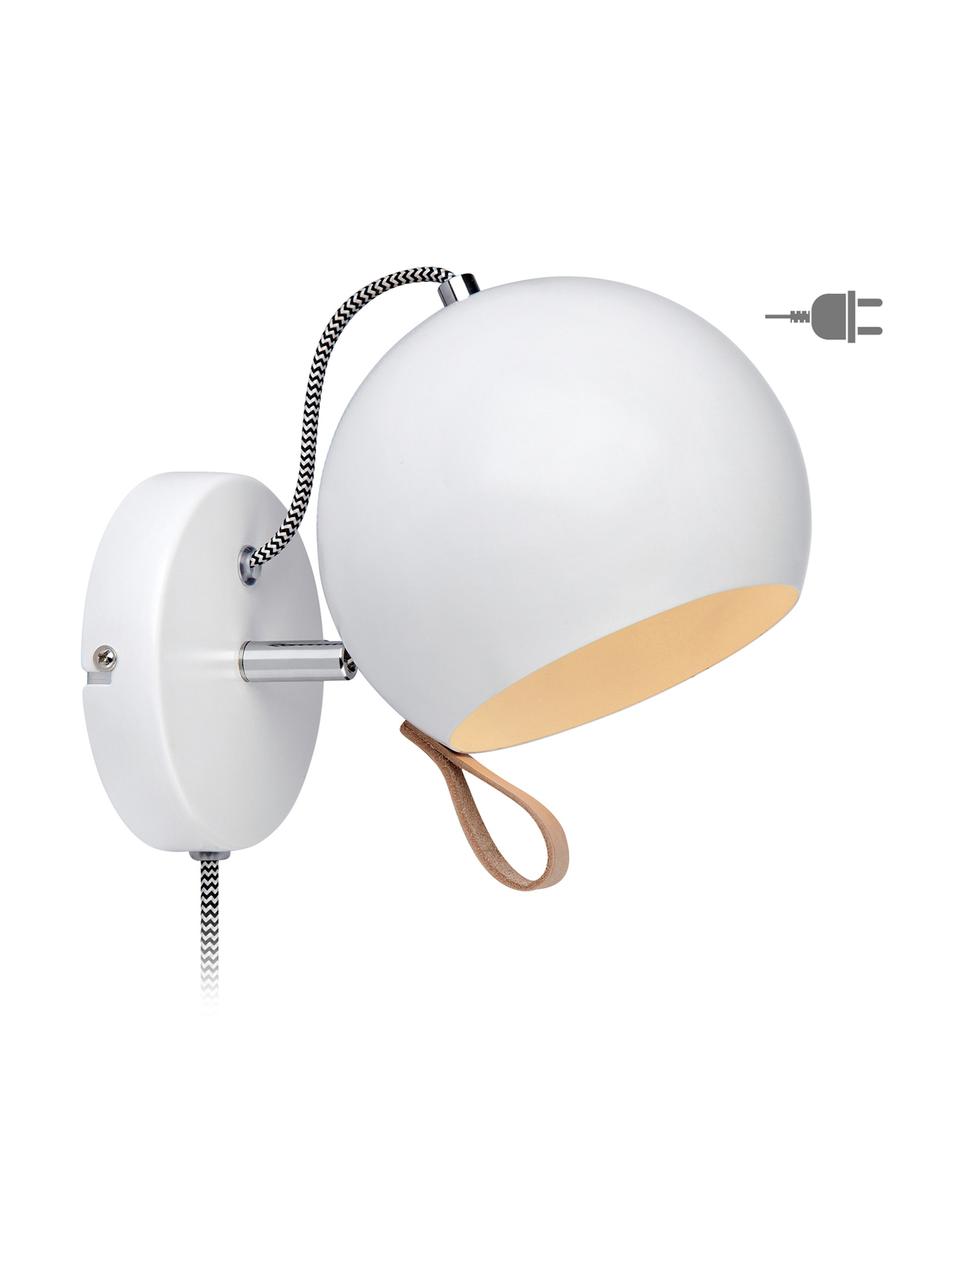 Kinkiet z wtyczką Ball, Lampa wewnątrz i na zewnątrz: biały Kabel: czarny, biały Pętla: brązowy, S 21 x W 19 cm